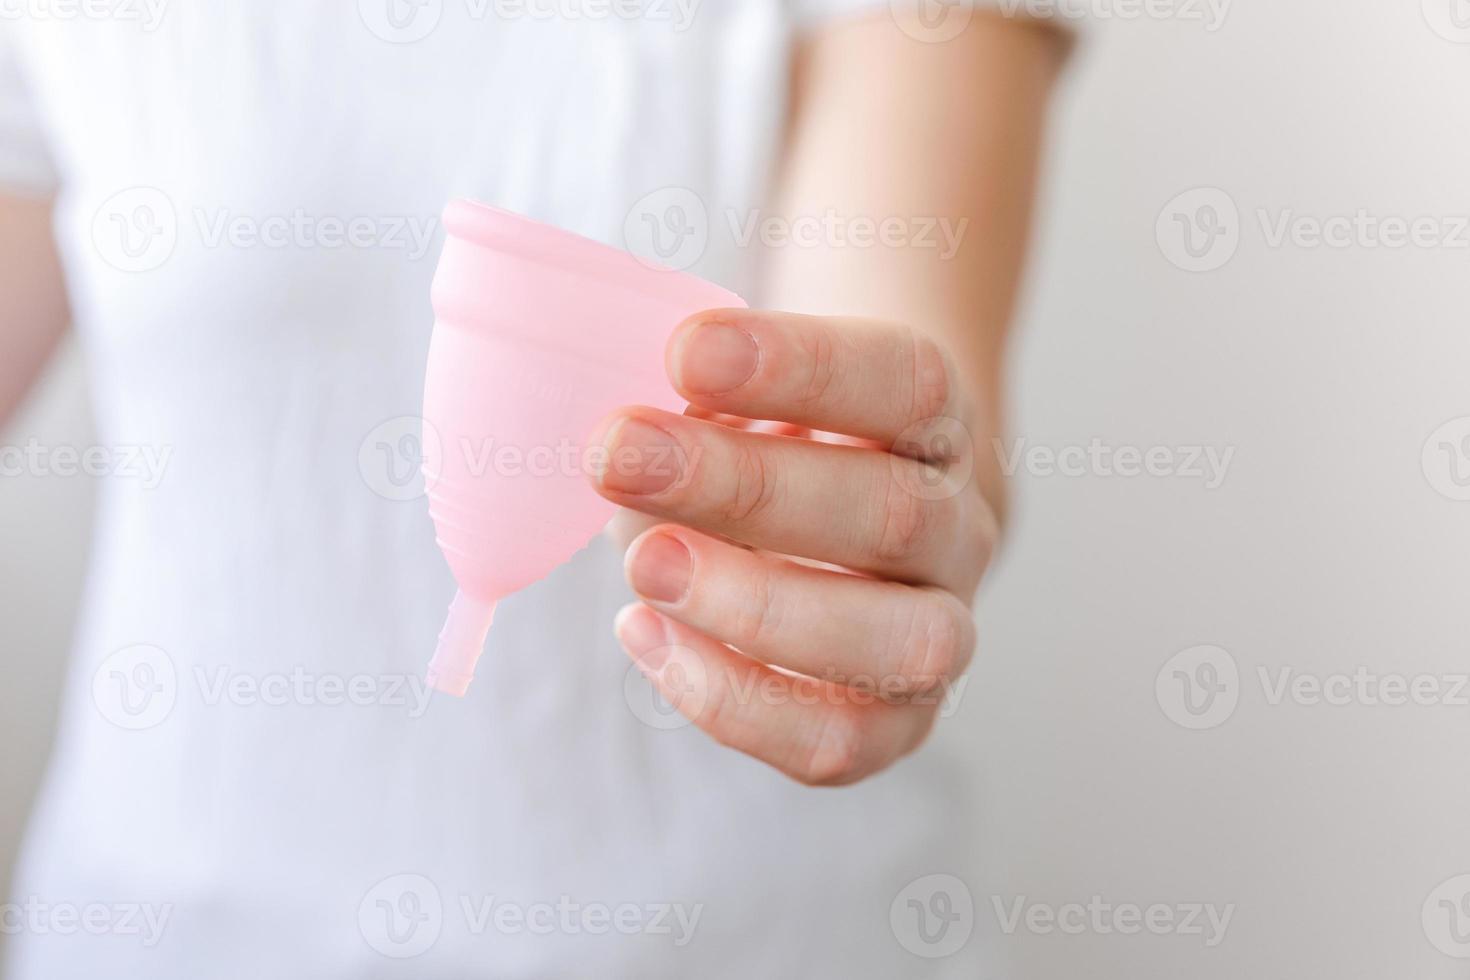 kvinna hand som håller rosa menskopp isolerad på vit bakgrund. kvinna modern alternativ eko gynekologisk hygien under menstruation. behållare för blod i flickans hand. foto